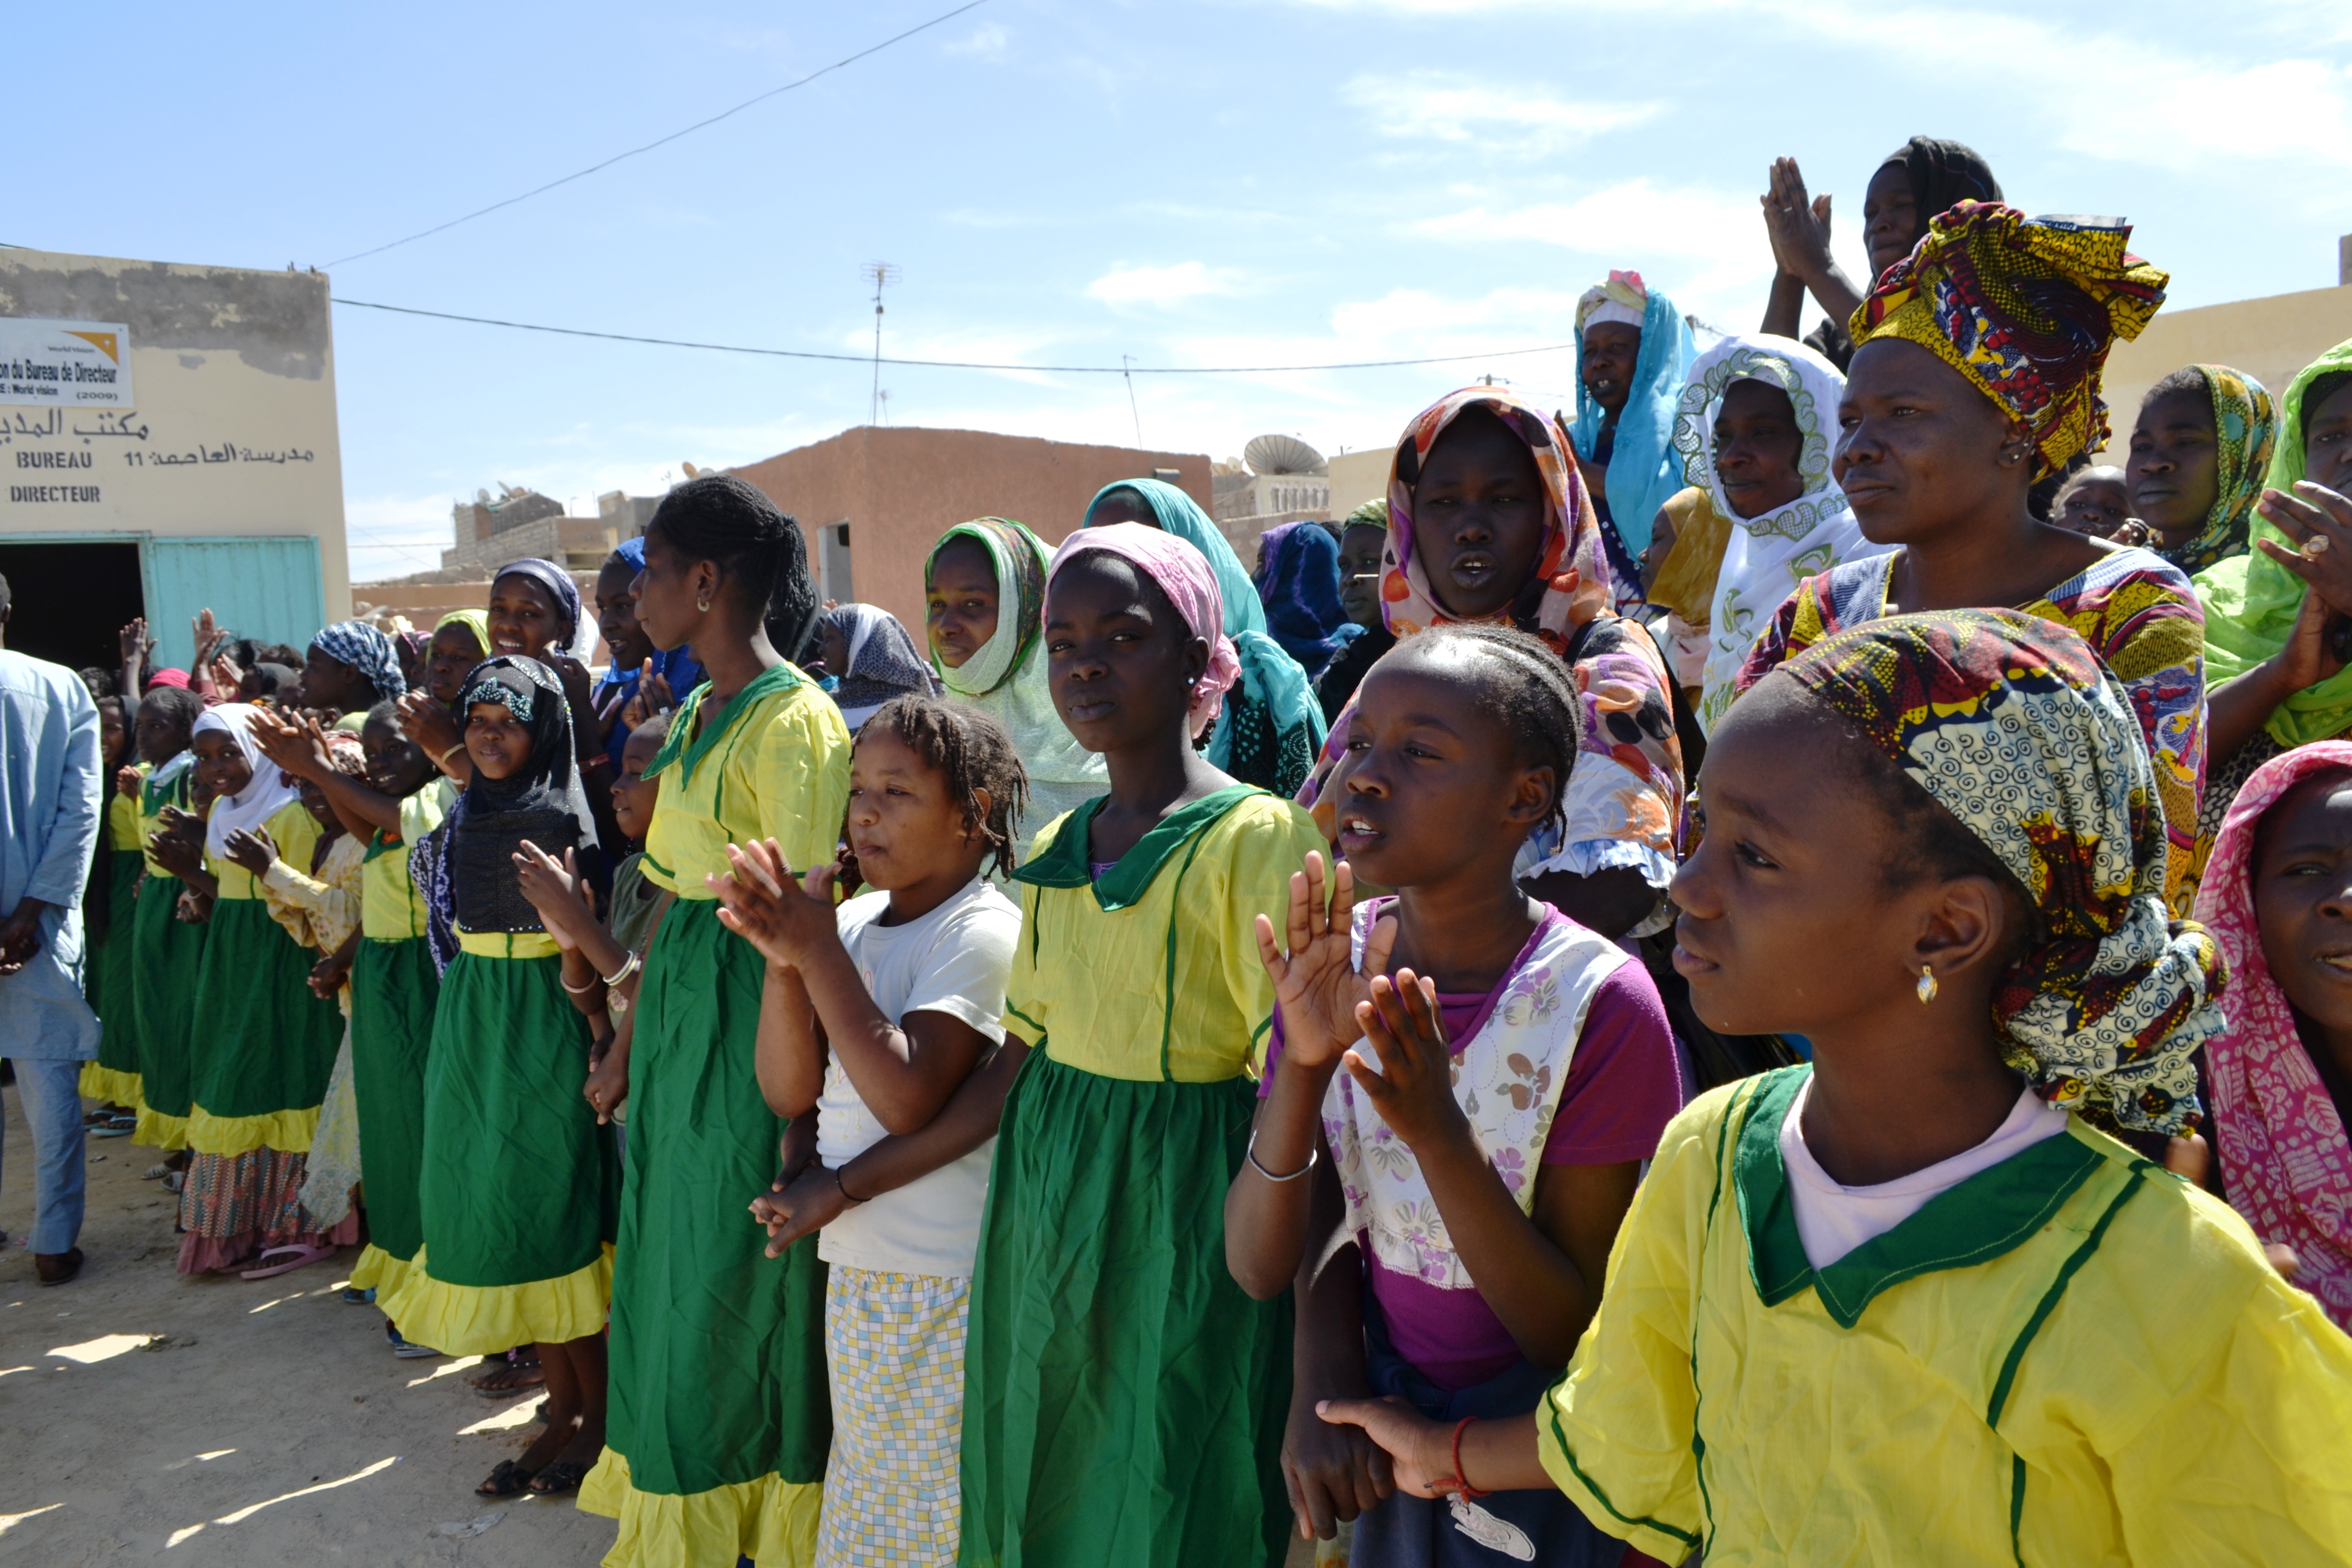 Sebkhan korttelin koulun oppilaat järjestivät kunniakujan kummihankkeeseen tutustumaan tulleille vieraille. Kaikki kummitukea saavat koulut sijaitsevat Nouakchotin köyhälistökortteleissa. Kuva Teija Laine